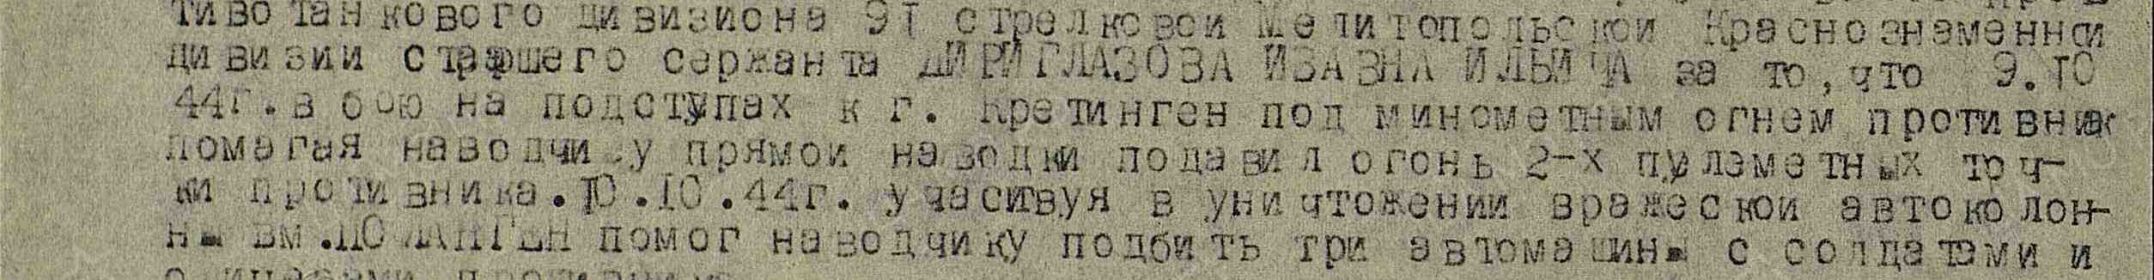 Наградной лист 1944